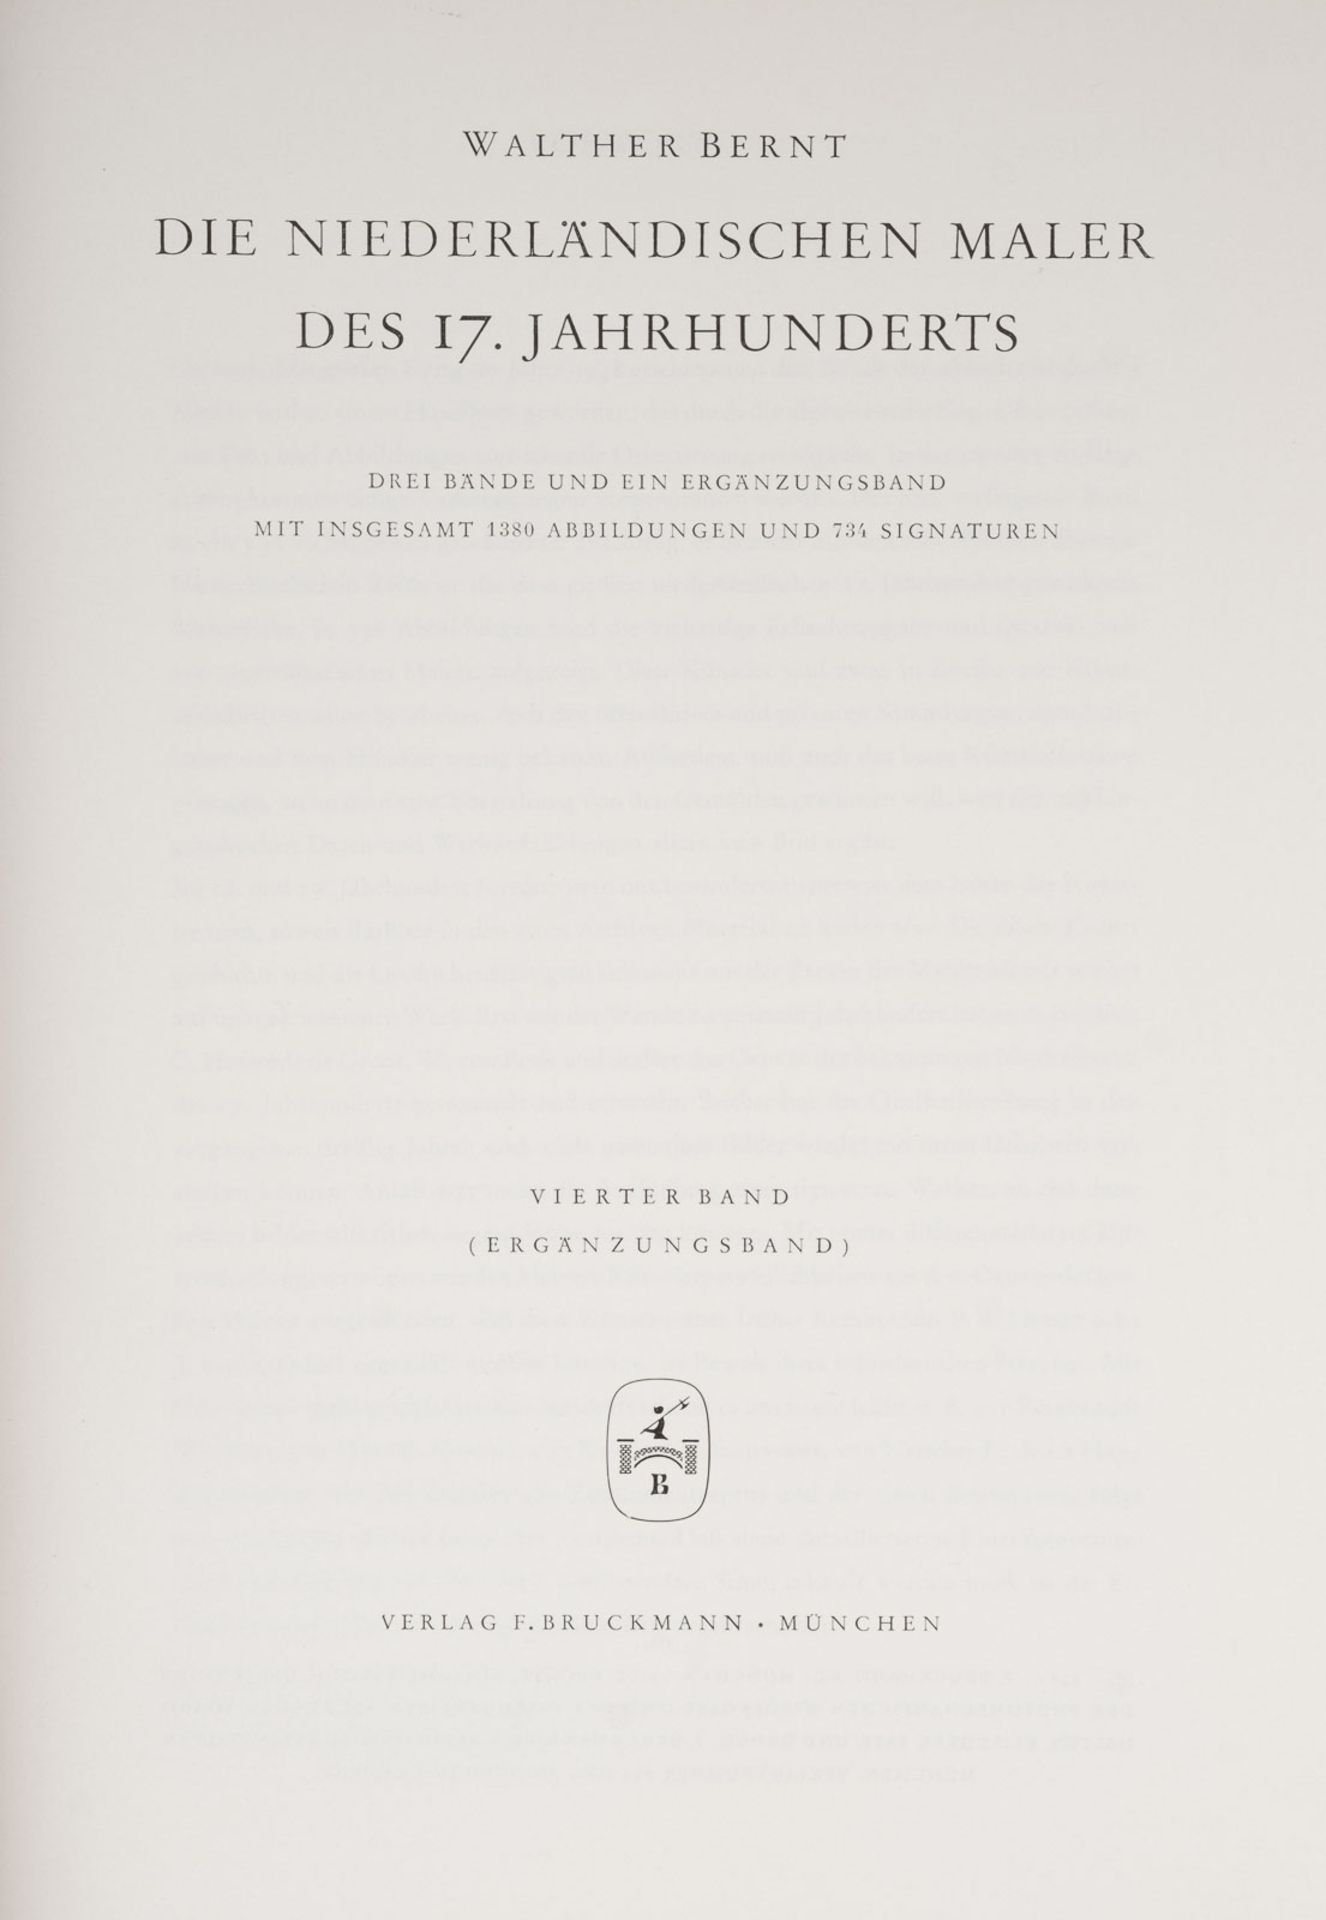  VIER BÄNDE ZUR NIEDERLÄNDISCHEN MALEREI DES 17. JH. VON WALTHER BERNT - Bild 5 aus 5